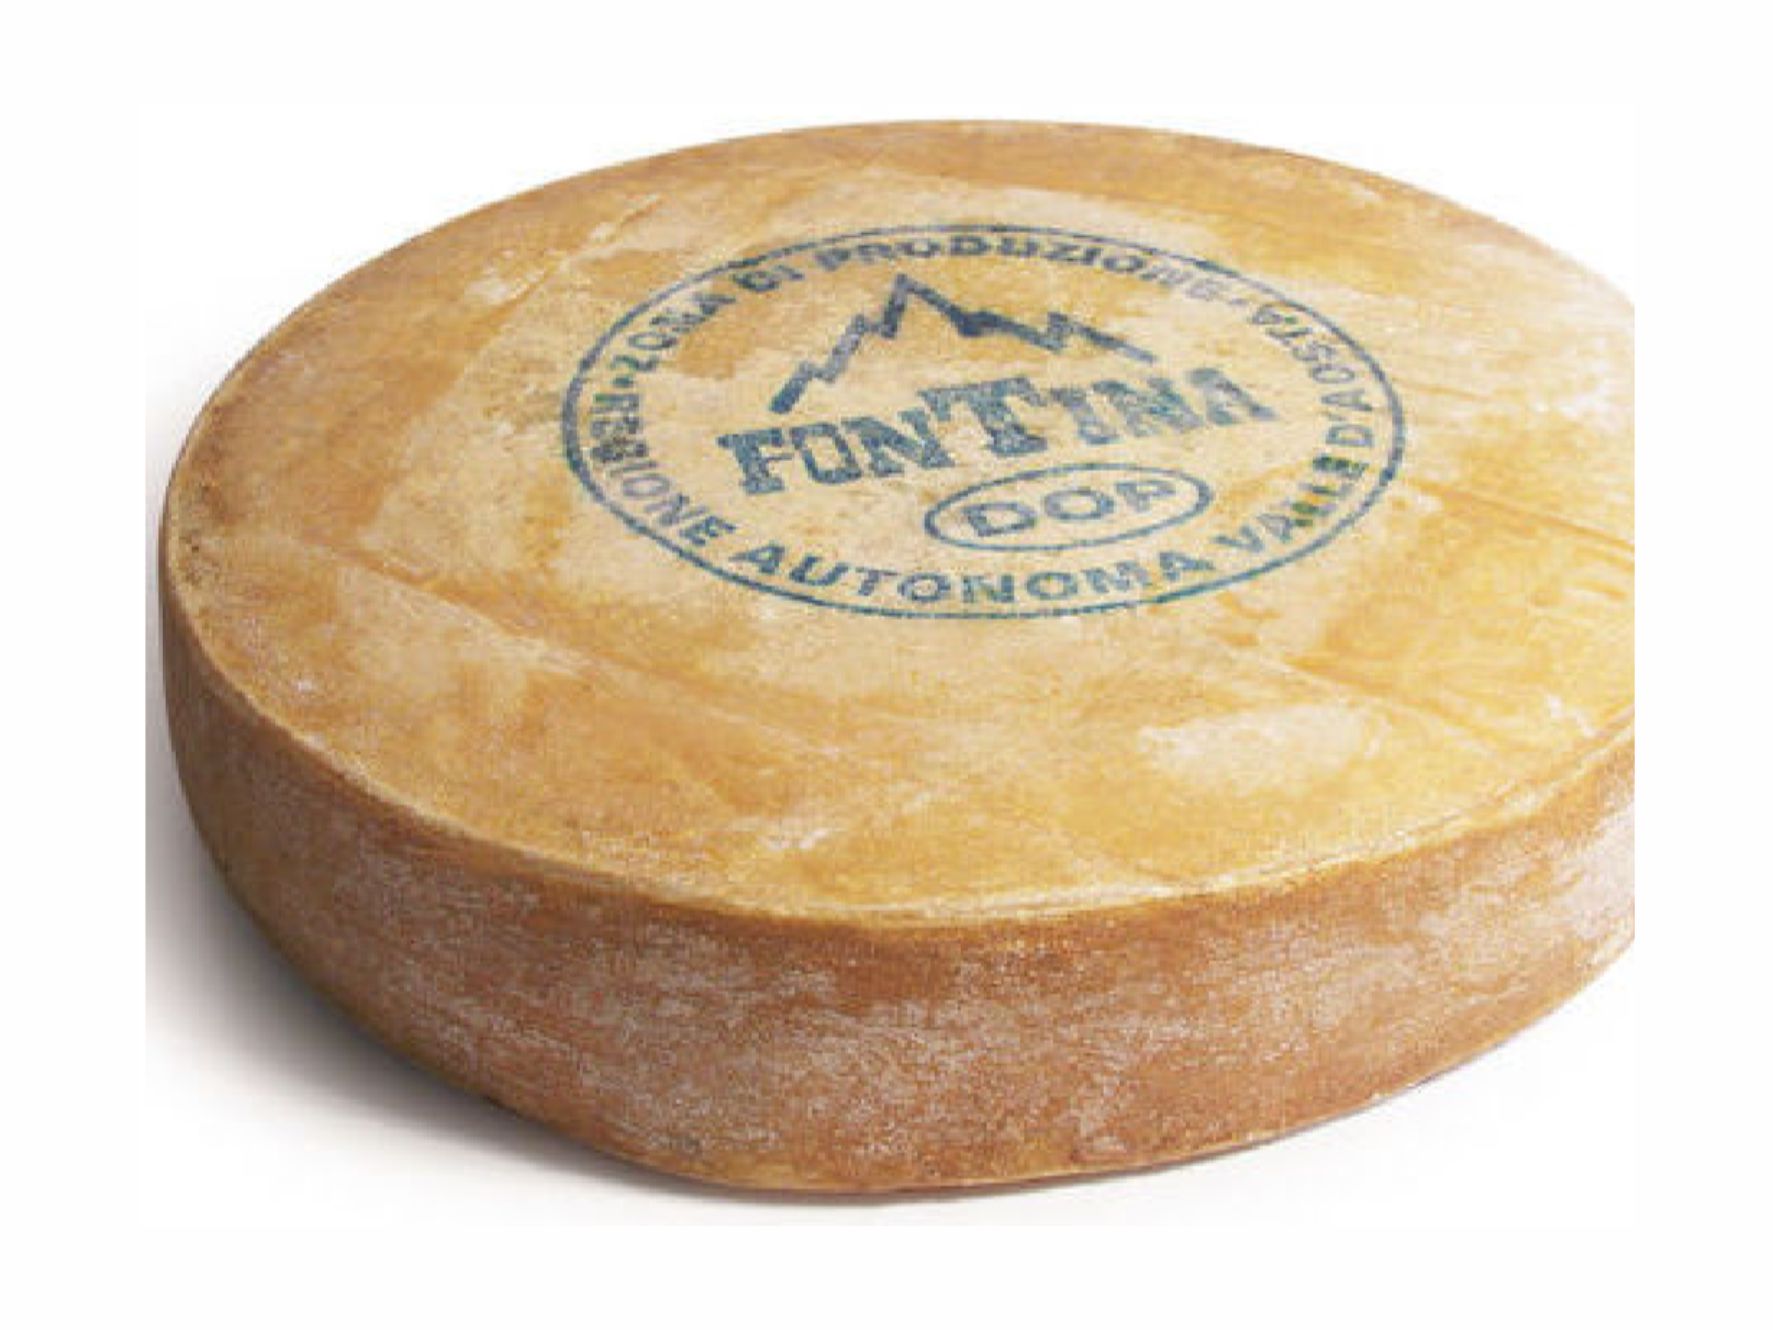 Купить головку сыра. Штампы для сыра. Печать для сыра. Штамп на сыре. Штампы для маркировки сыра.